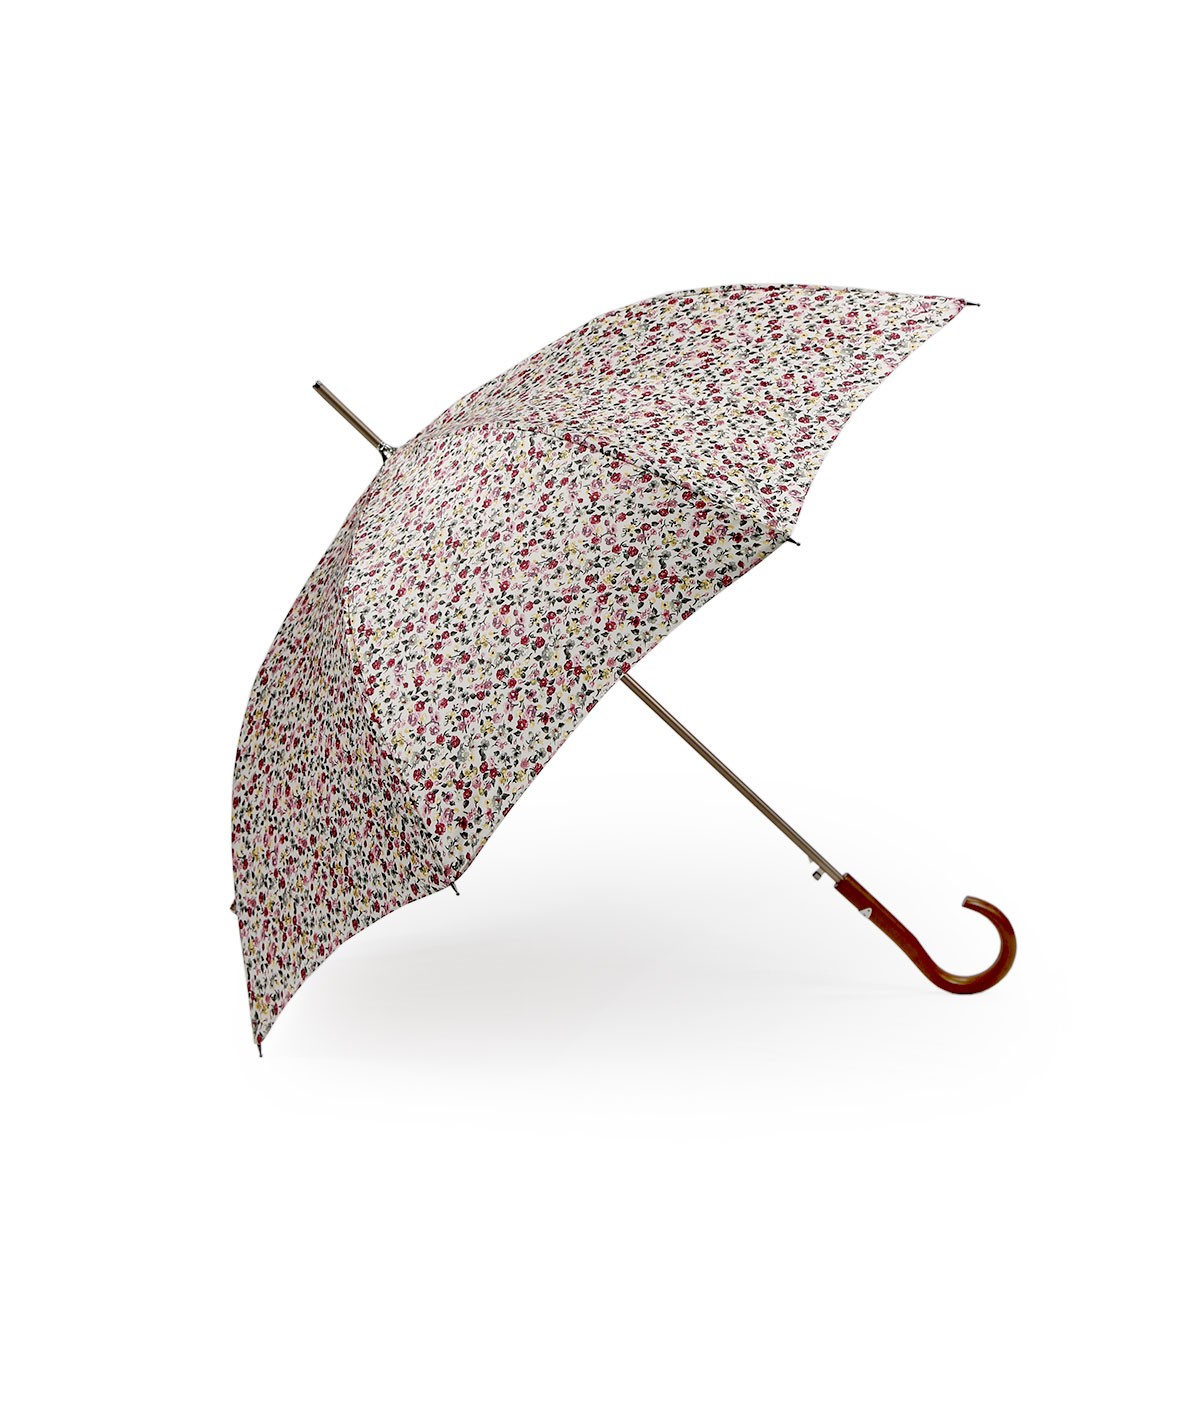 → Parapluie Satin Imprimé Fantaisie - Long Automatique N°6 - Made in France par Maison Pierre Vaux Fabricant Français de Paraplu